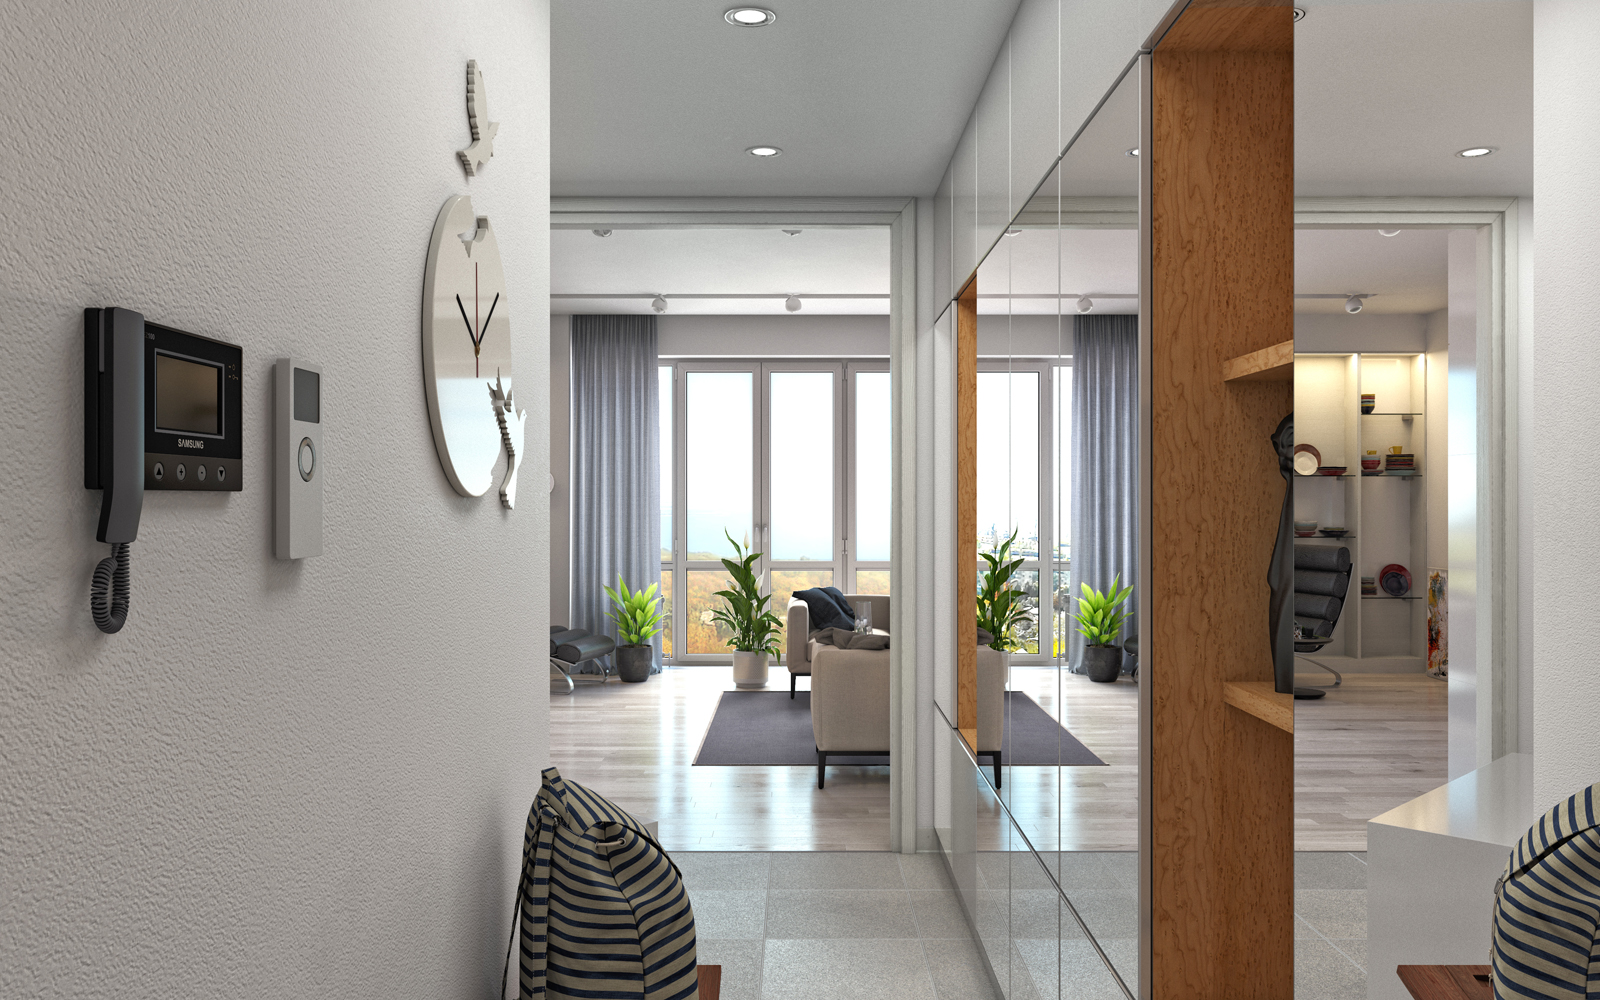 Жилой комплекс "Nobel" 1 комнатная квартира. в 3d max corona render изображение